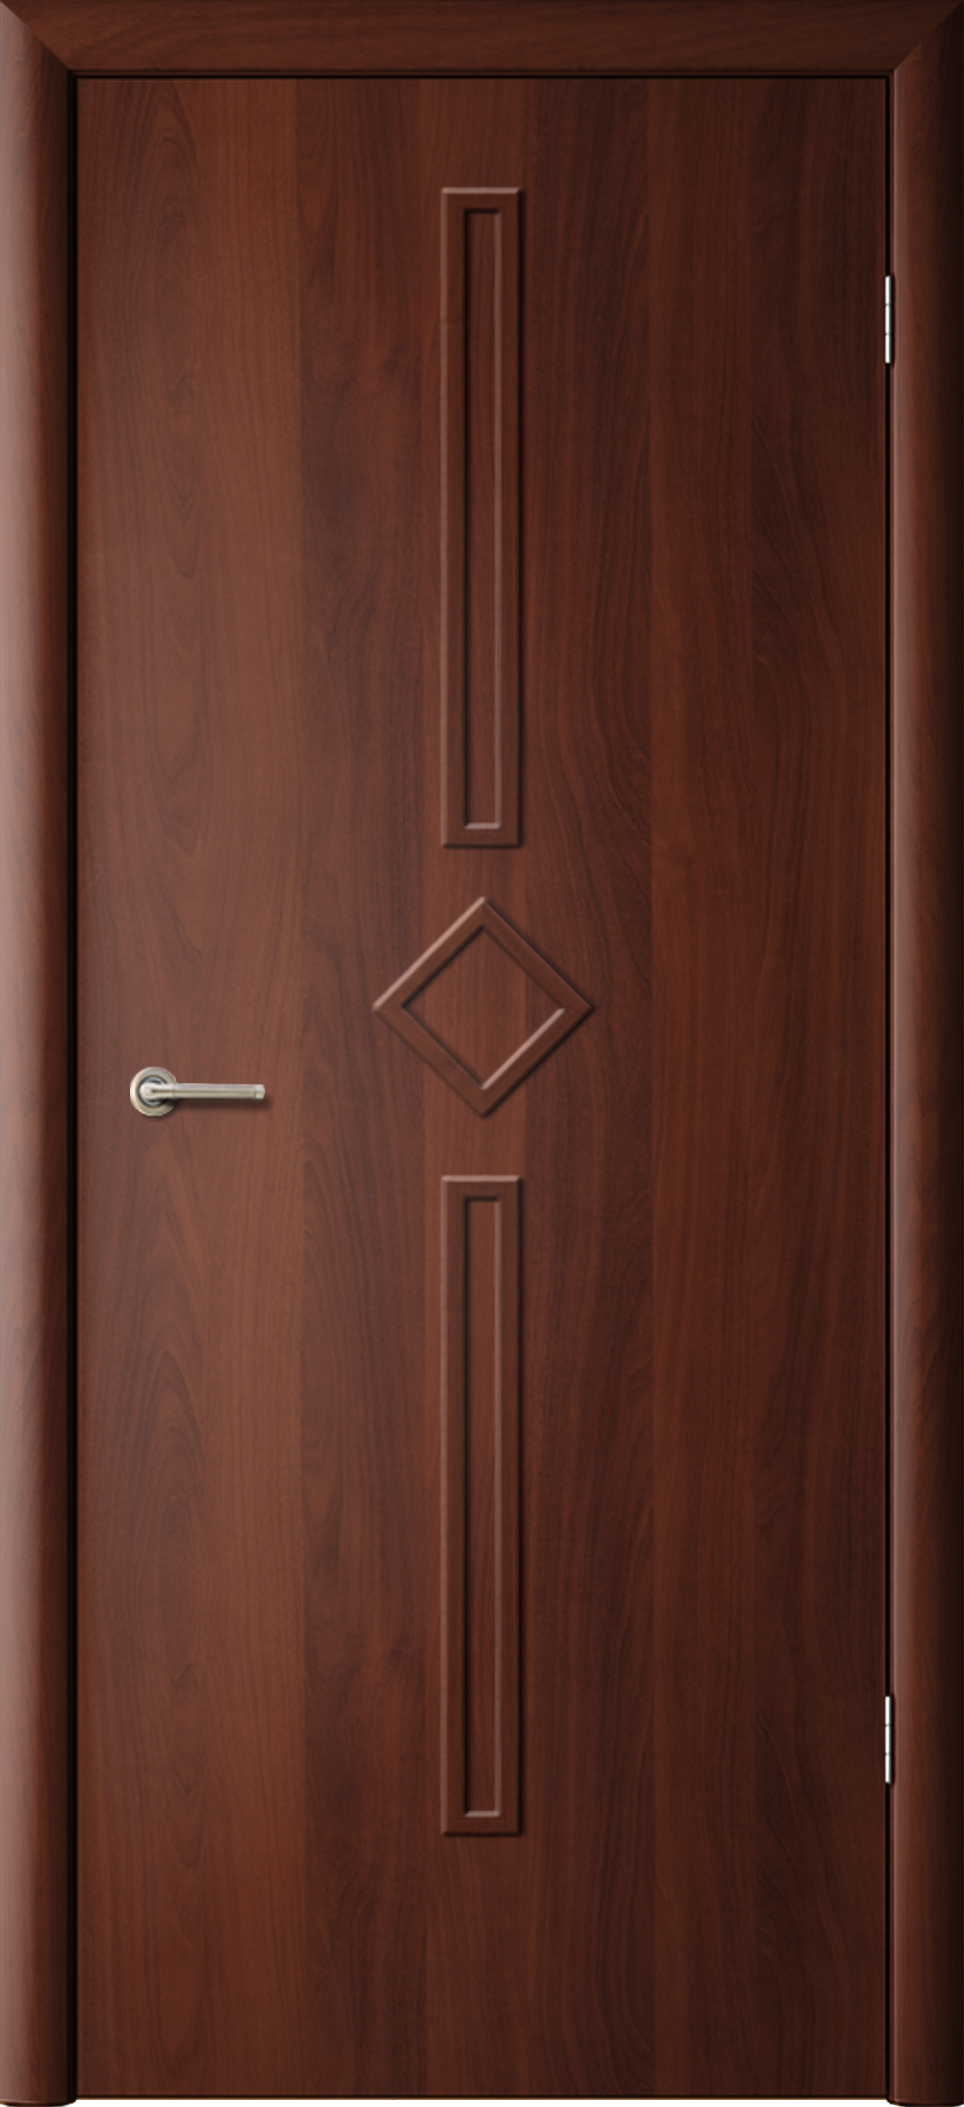 Полотна дверей Диадема, облицованные ламинированной пленкой. Фрегат - Поразительное число предложений колеровки, элементов стекол - Bозможен выбор по фото.